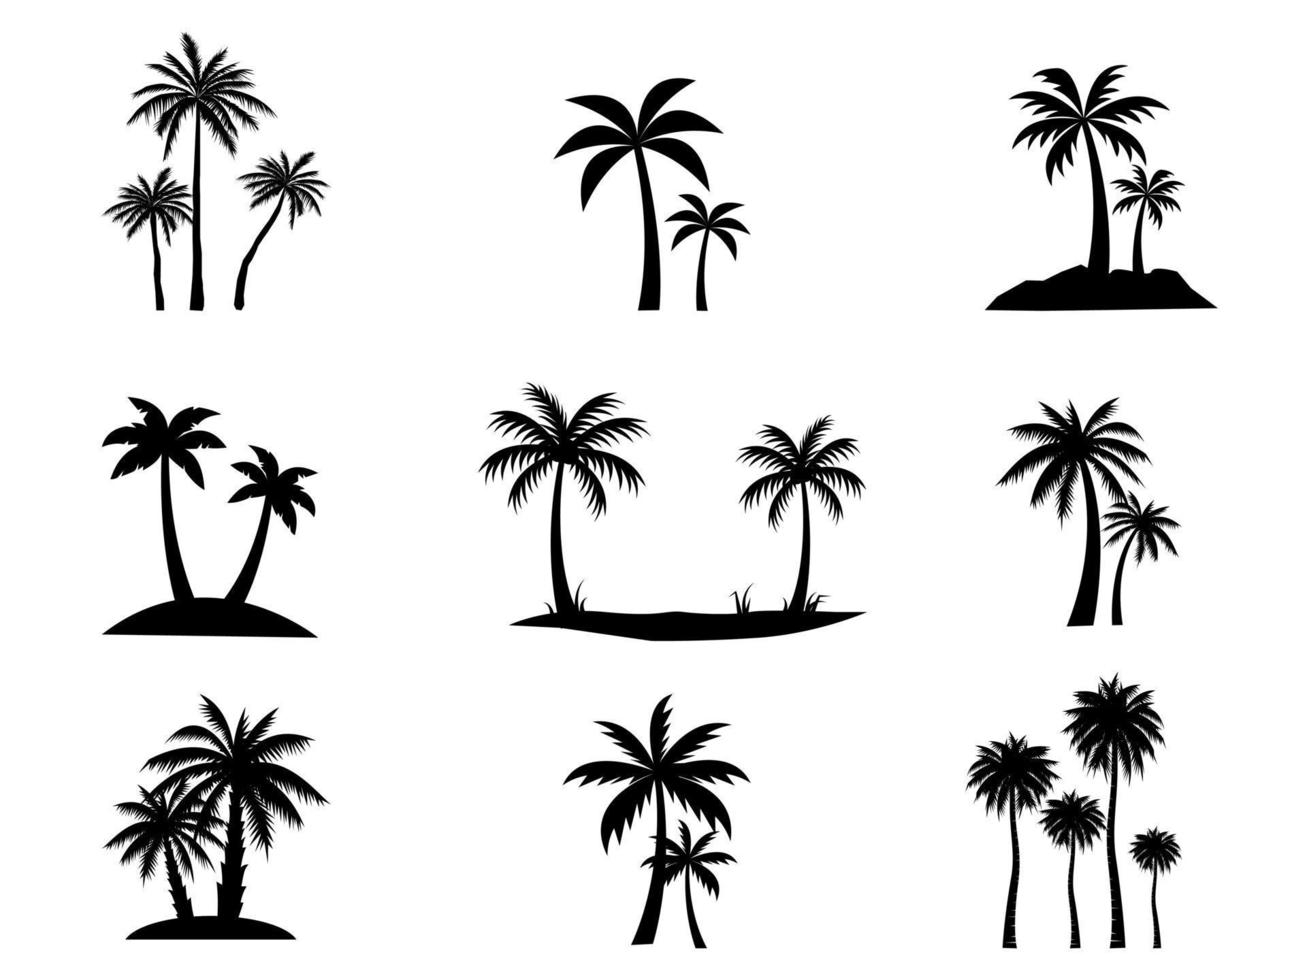 colección de iconos de cocoteros negros. se puede utilizar para ilustrar cualquier tema de naturaleza o estilo de vida saludable. vector